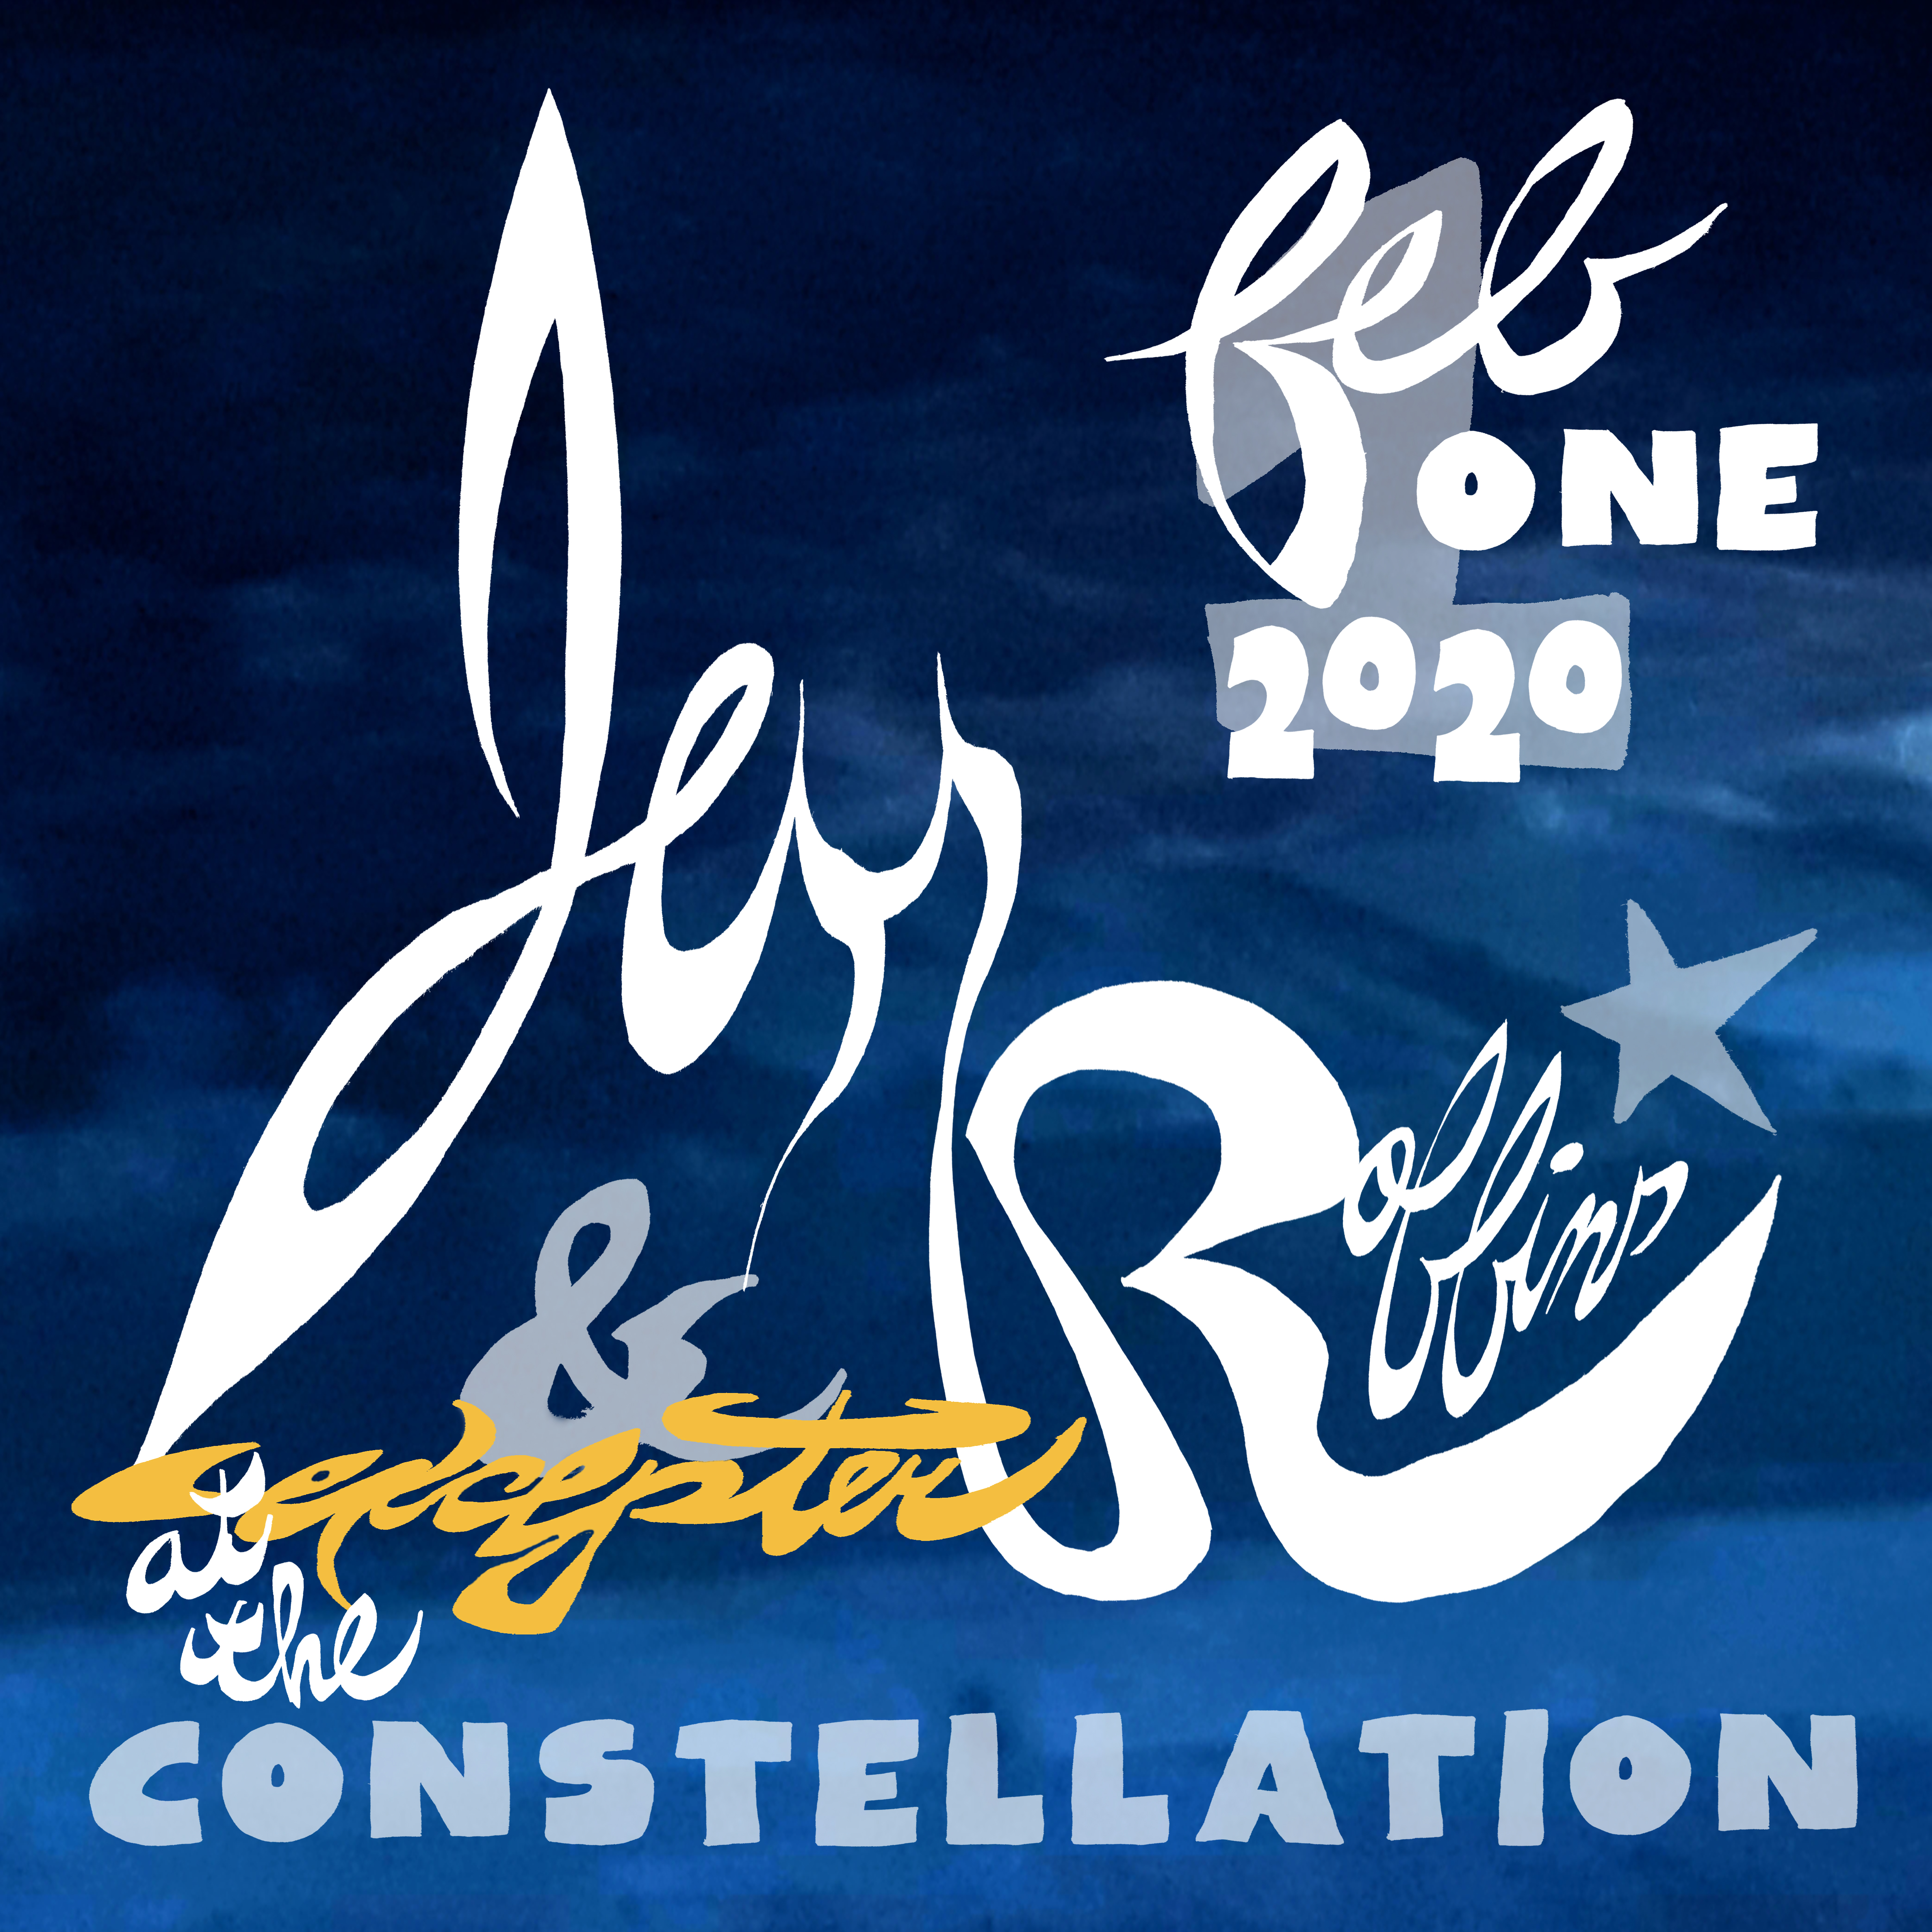 Jess-Robbins-Excepter-Constellation-02-01-2020 (1)